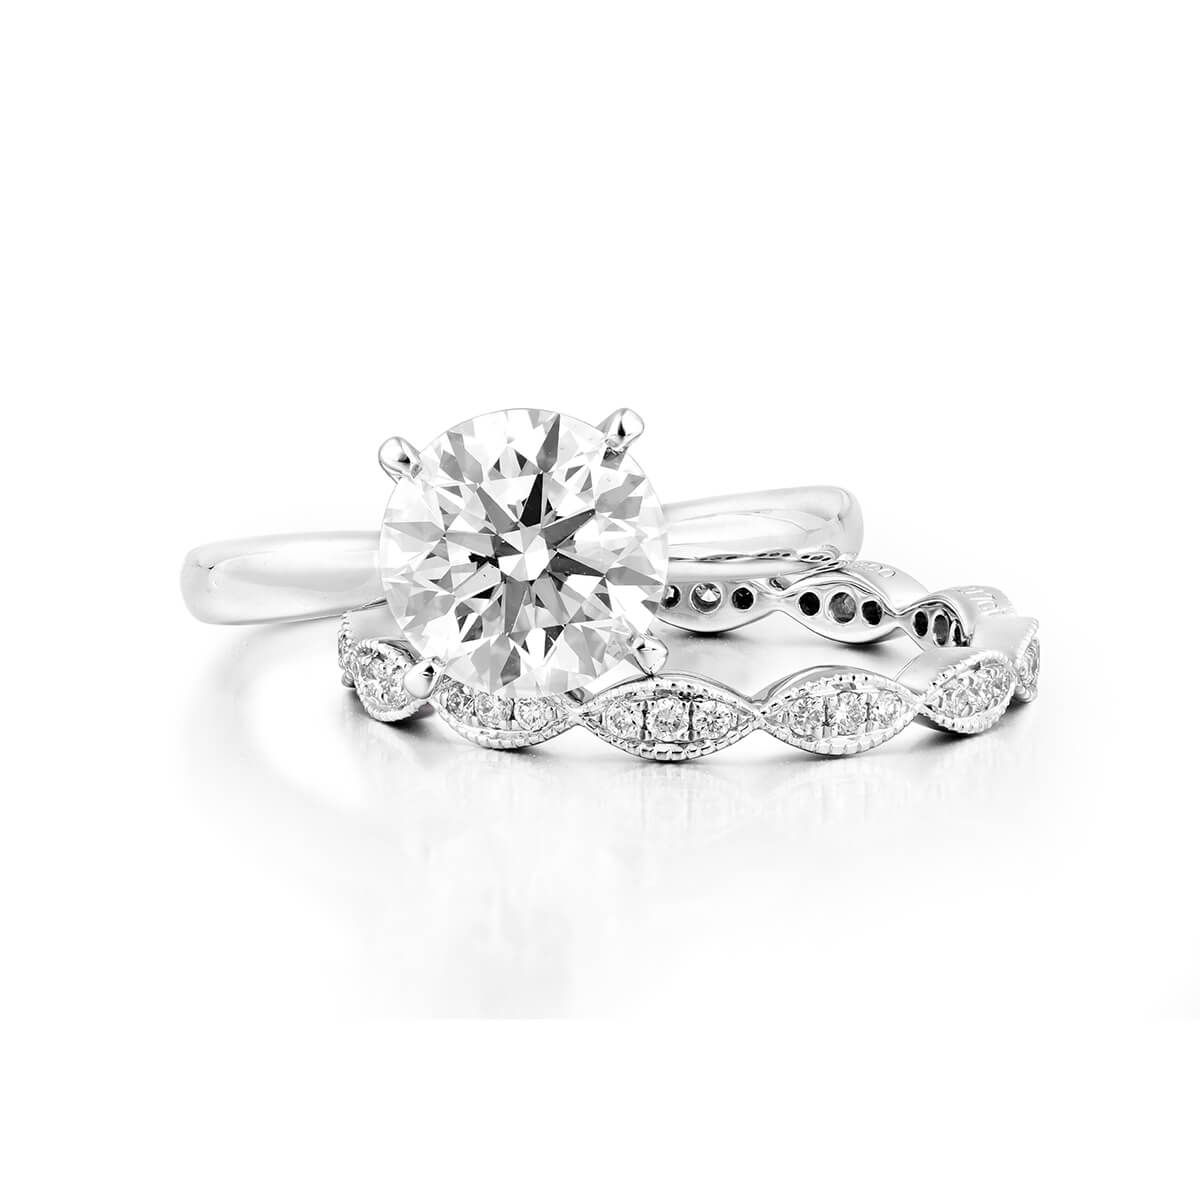  White Diamond Ring, 2.24 Ct. TW, Round shape, GIA Certified, 7173228129